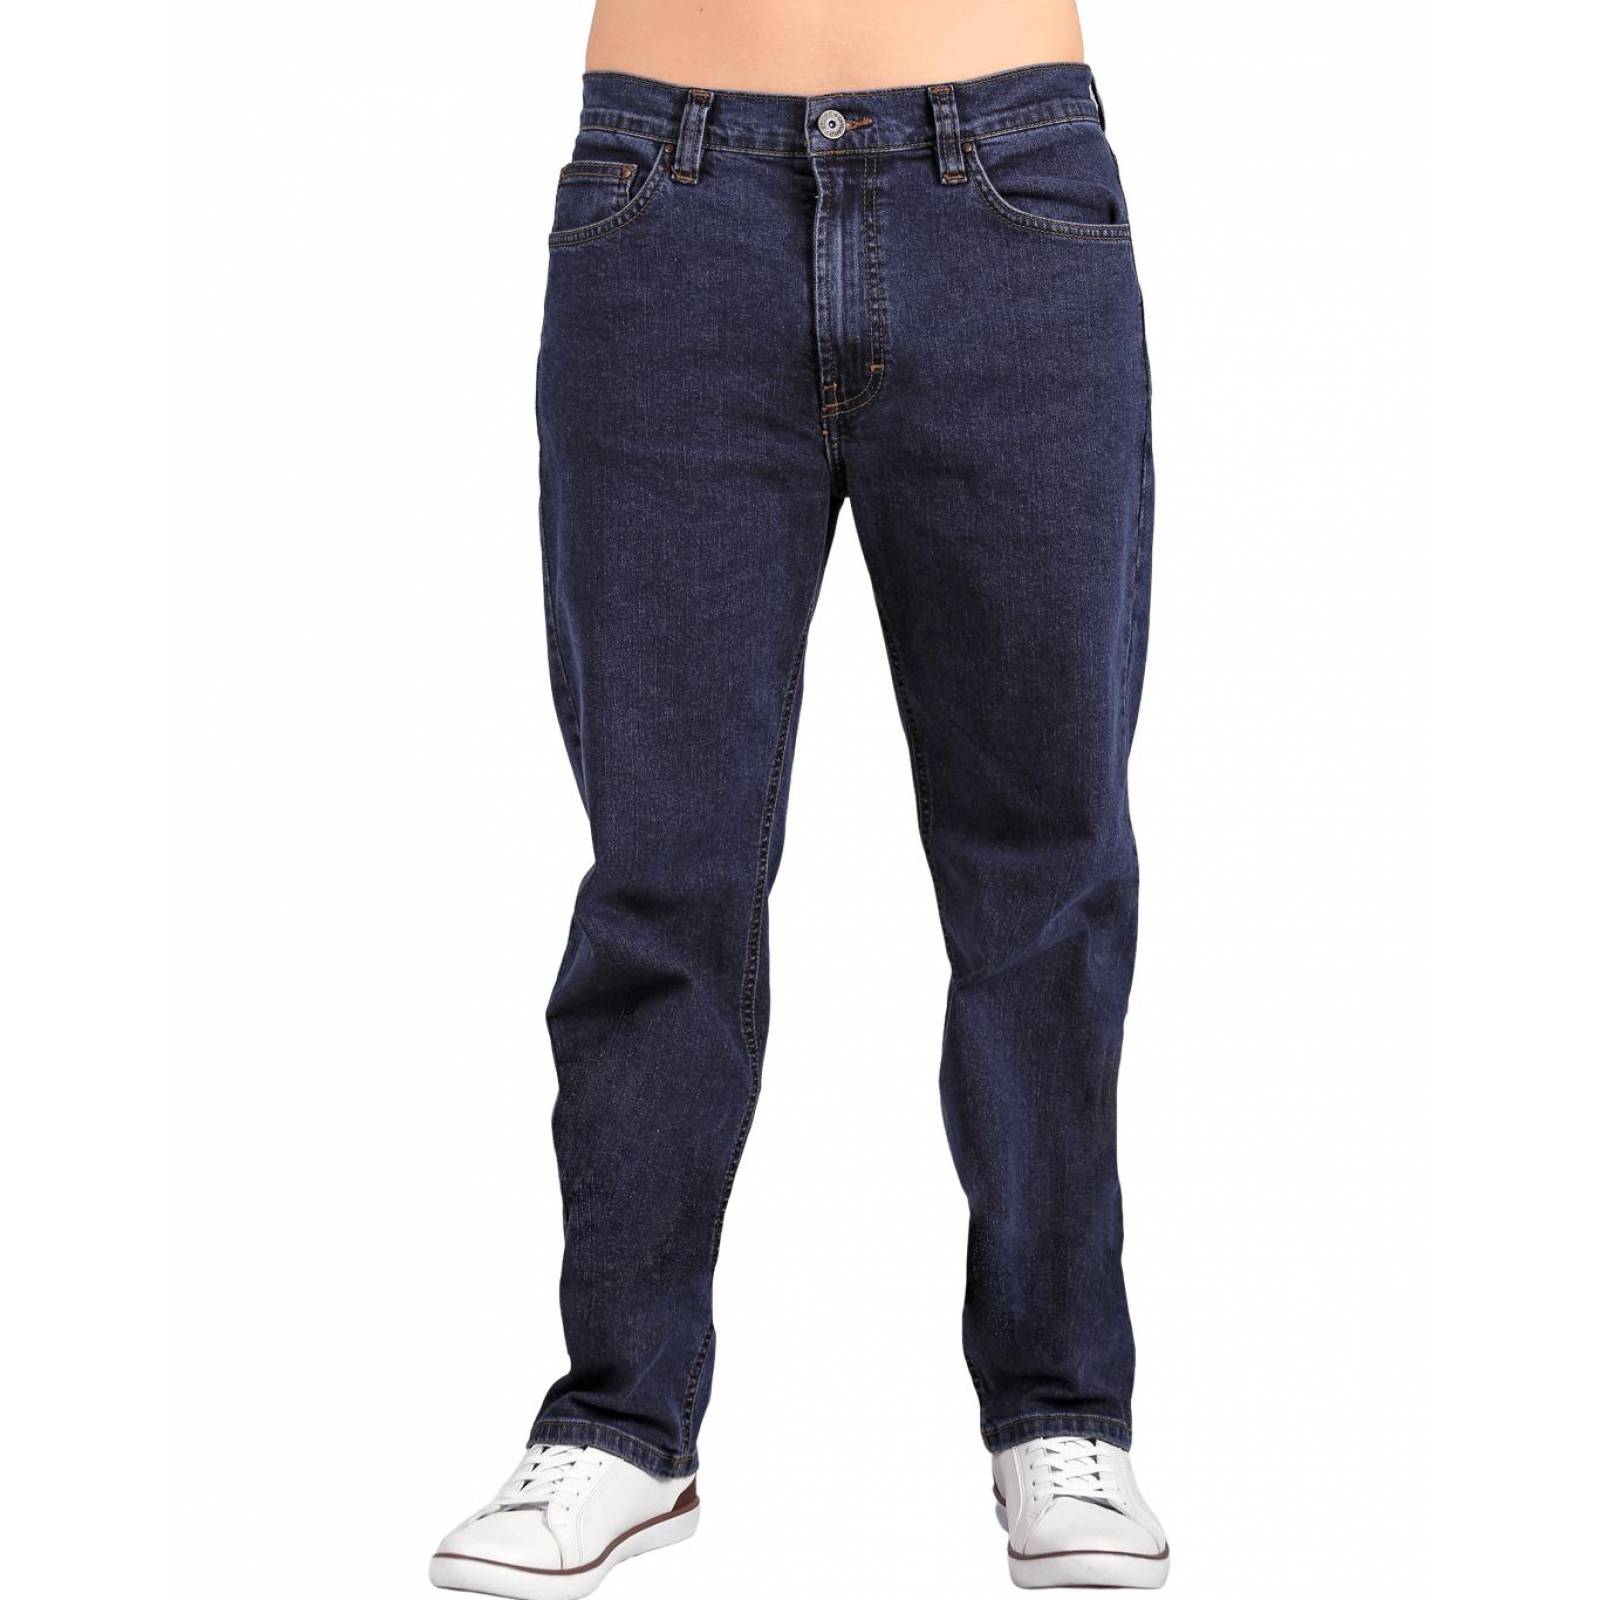 Jeans Básico Hombre Furor Indigo 62105607 Mezclilla Stretch